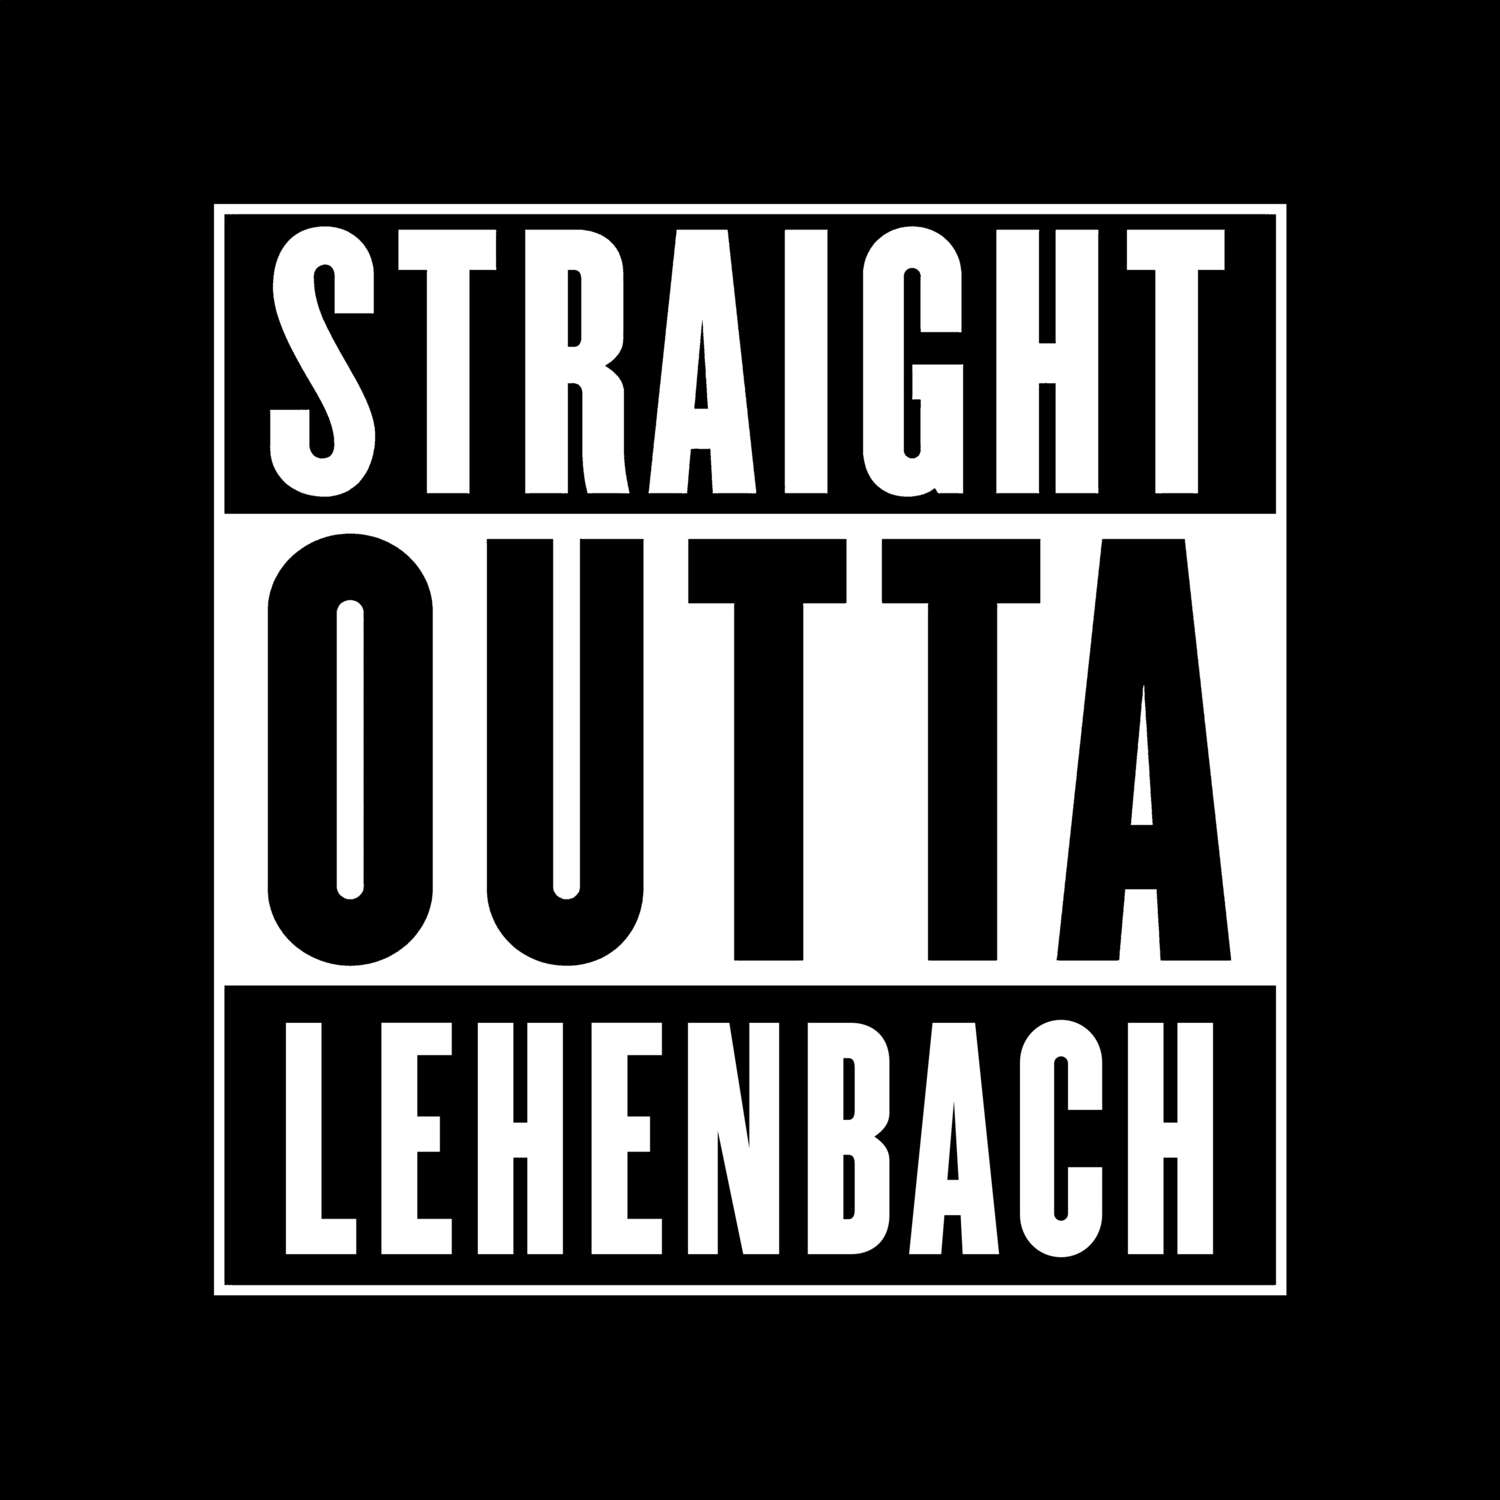 Lehenbach T-Shirt »Straight Outta«